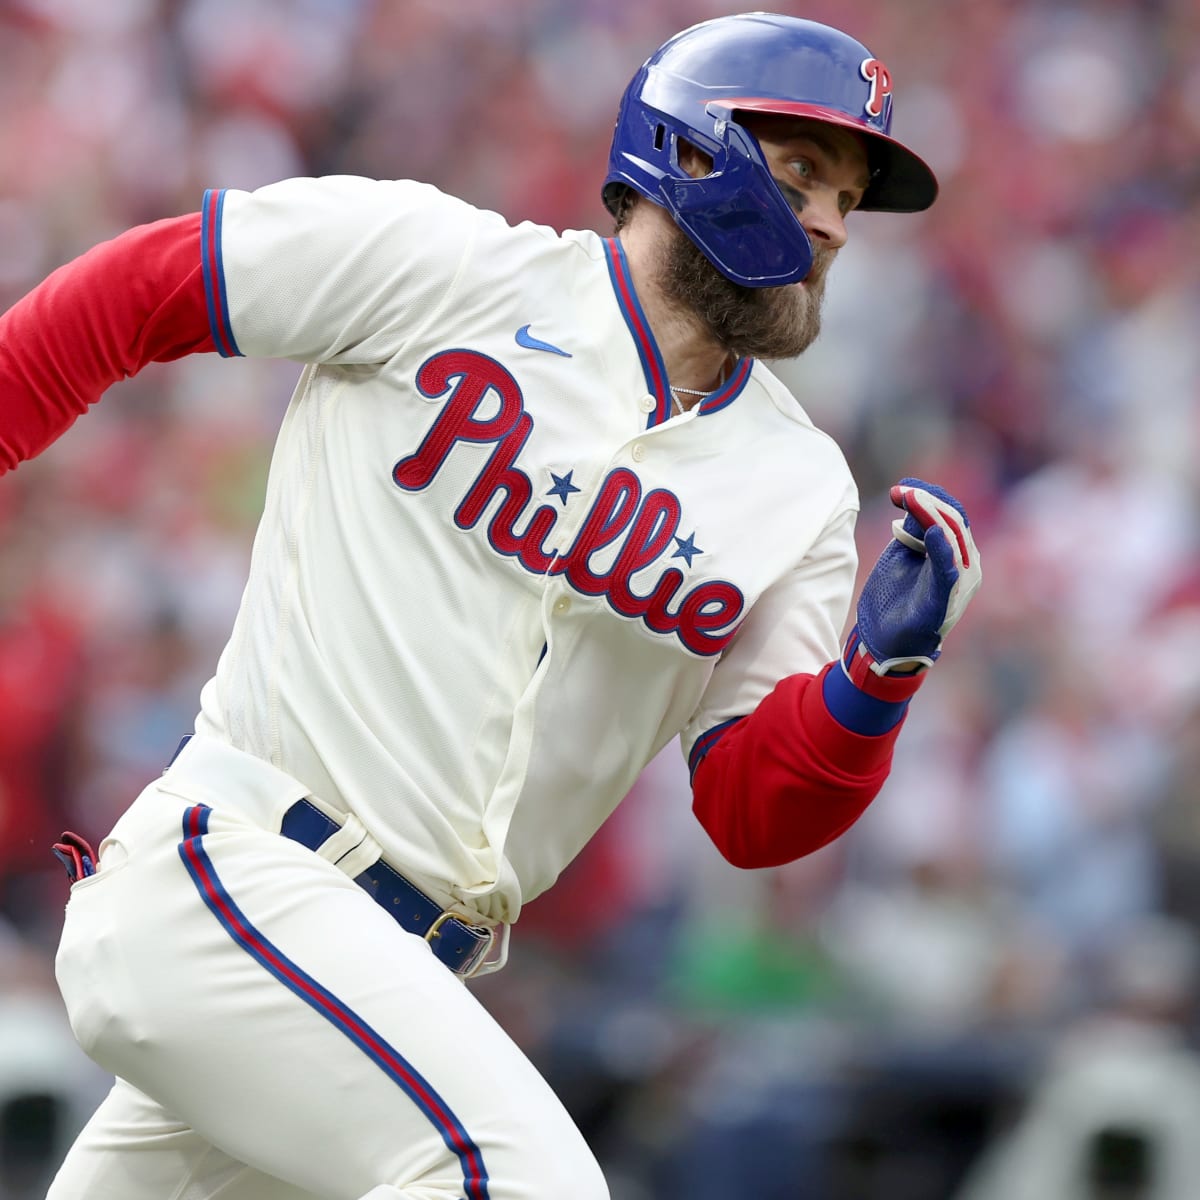 Harper, Phillies tie World Series mark with 5 HR, top Astros